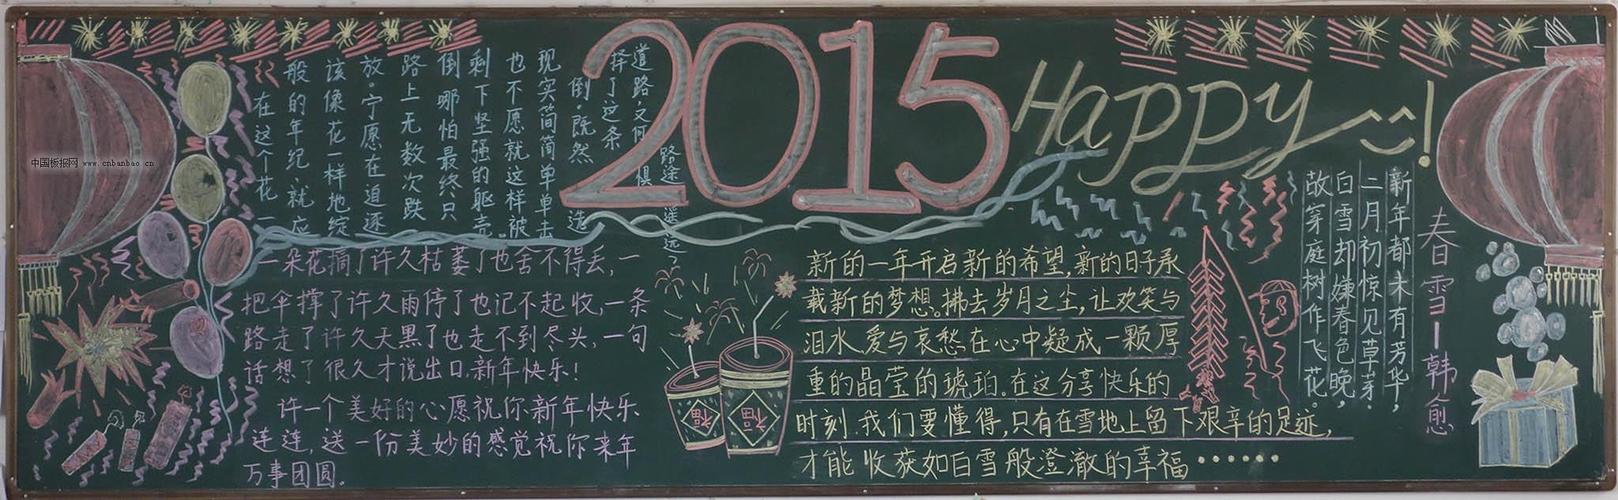 2015欢度新年黑板报大全 - 春节黑板报 - 老师板报网